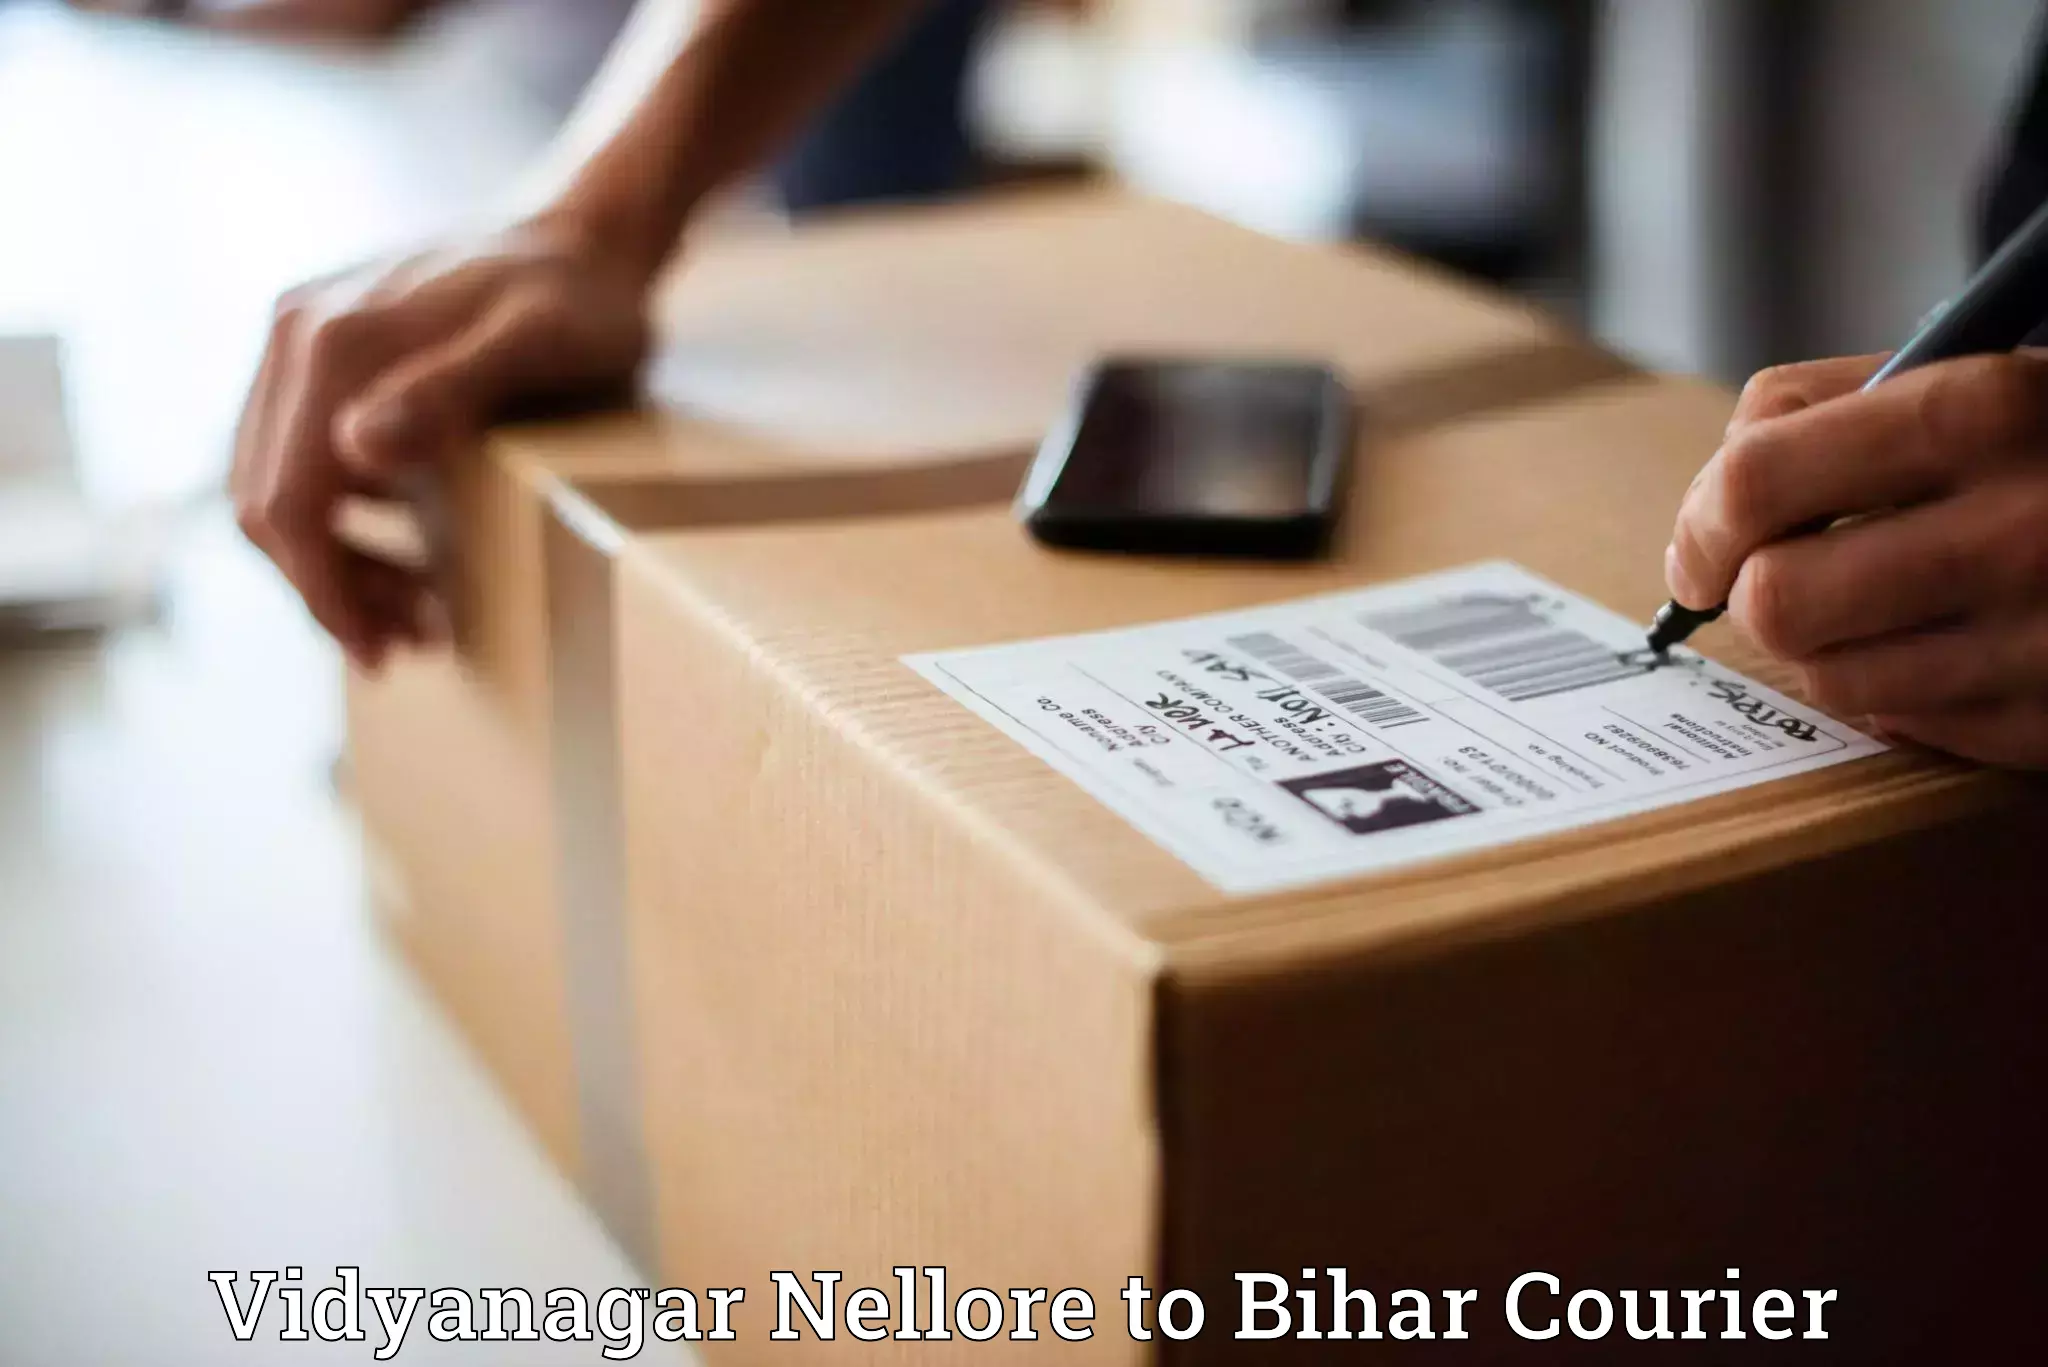 Lightweight courier in Vidyanagar Nellore to Sandesh